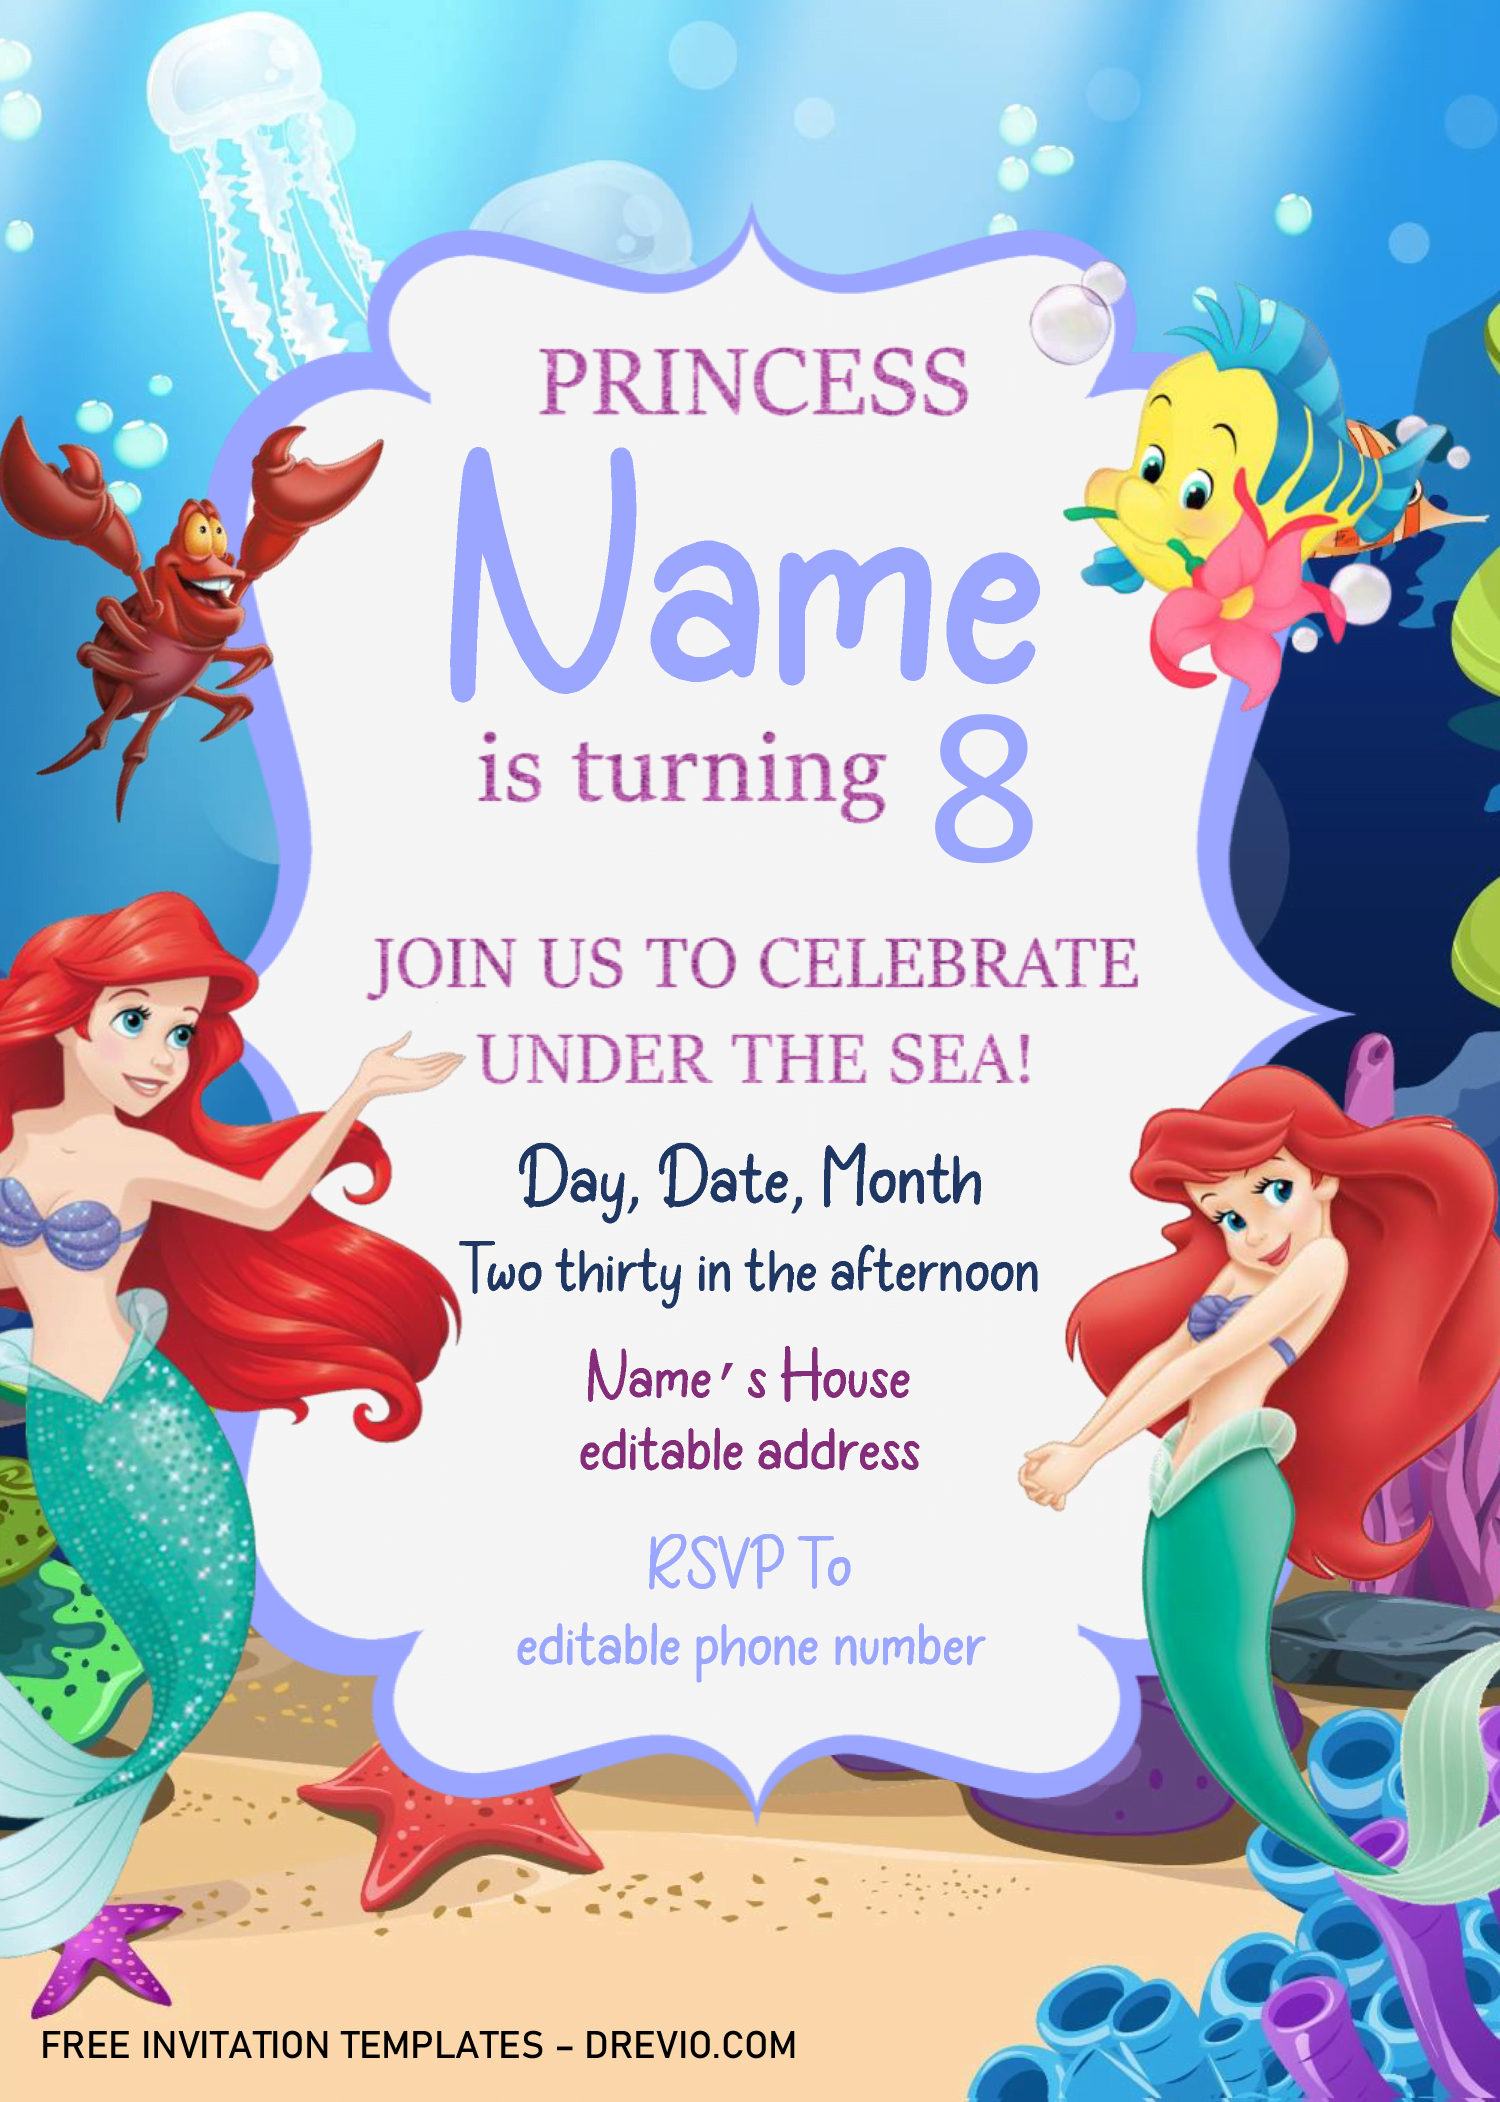 Little Mermaid Invitation Ariel Invitation Little Mermaid Birthday Party Invitation Ariel Birthday Party Invitation Little Mermaid Party